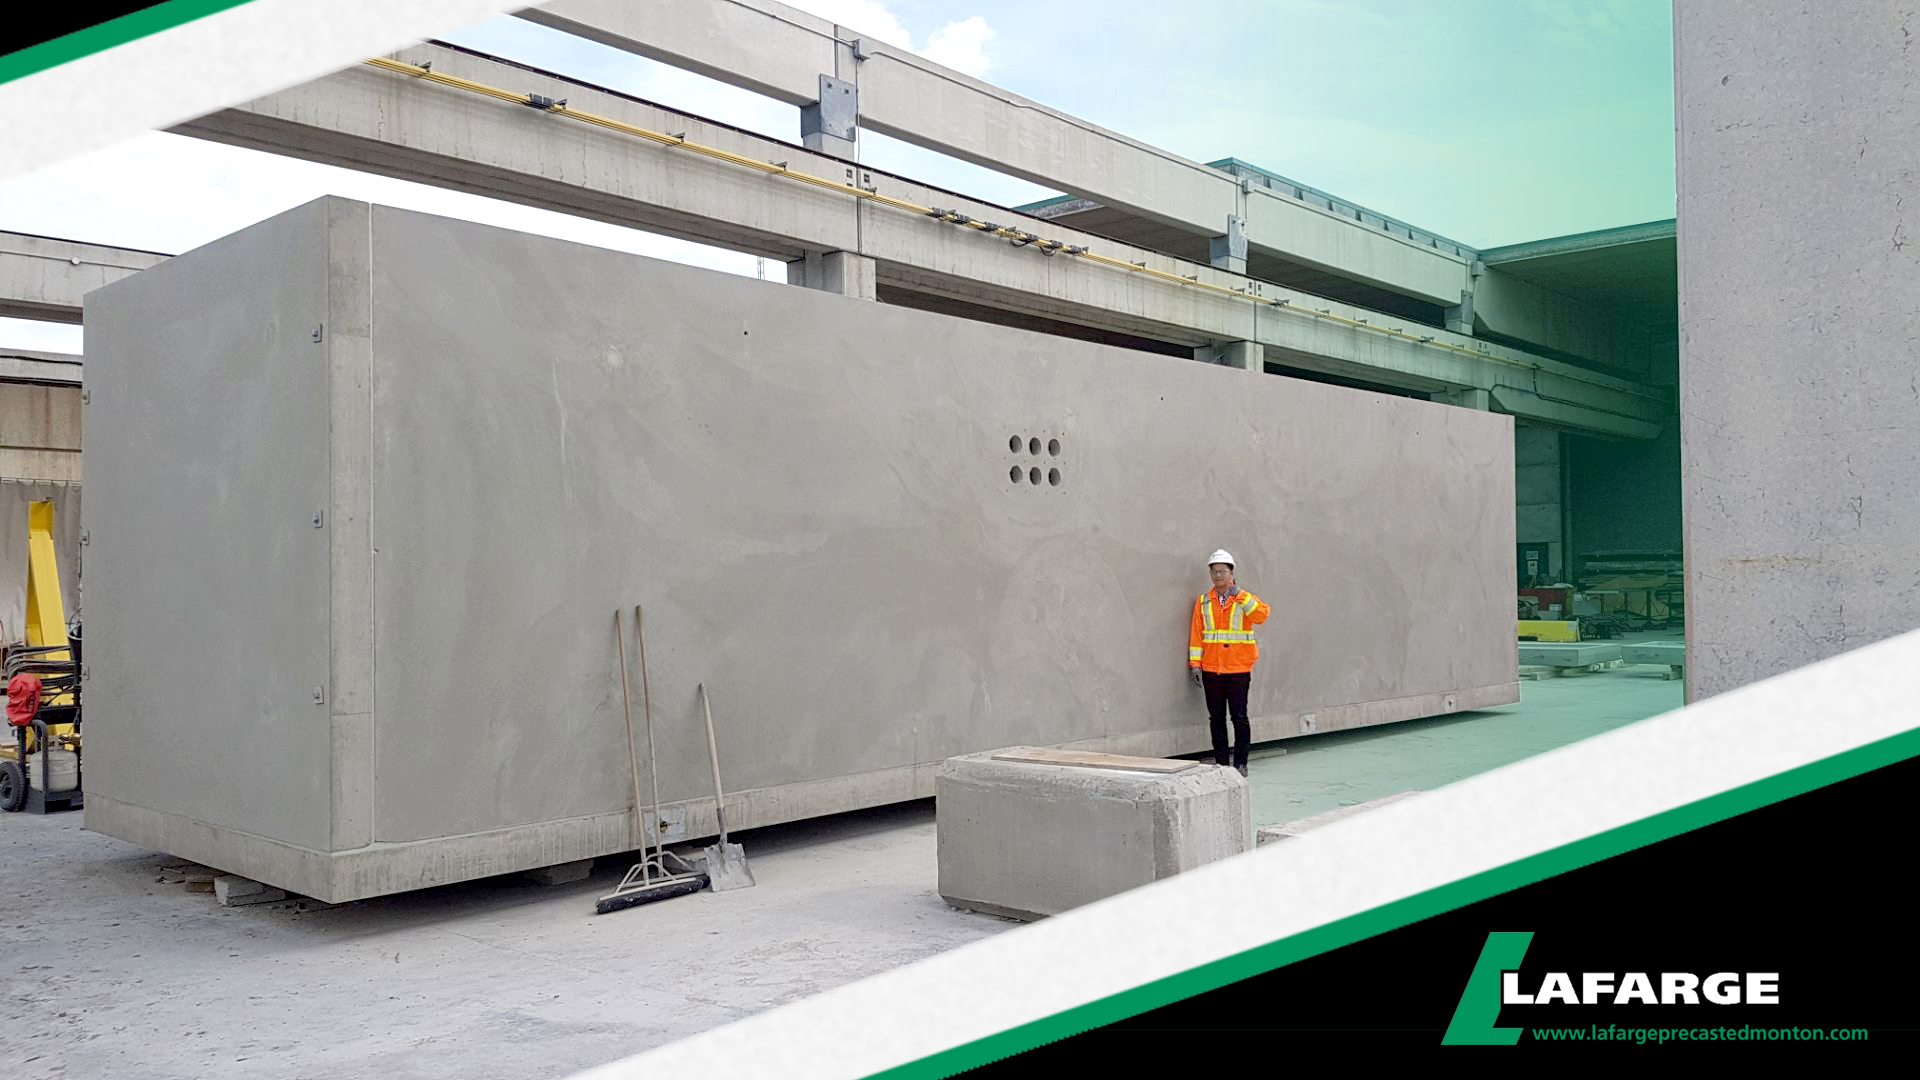 Lafarge Precast Edmonton vaults 1031 custom pullbox utility civil epcor vault